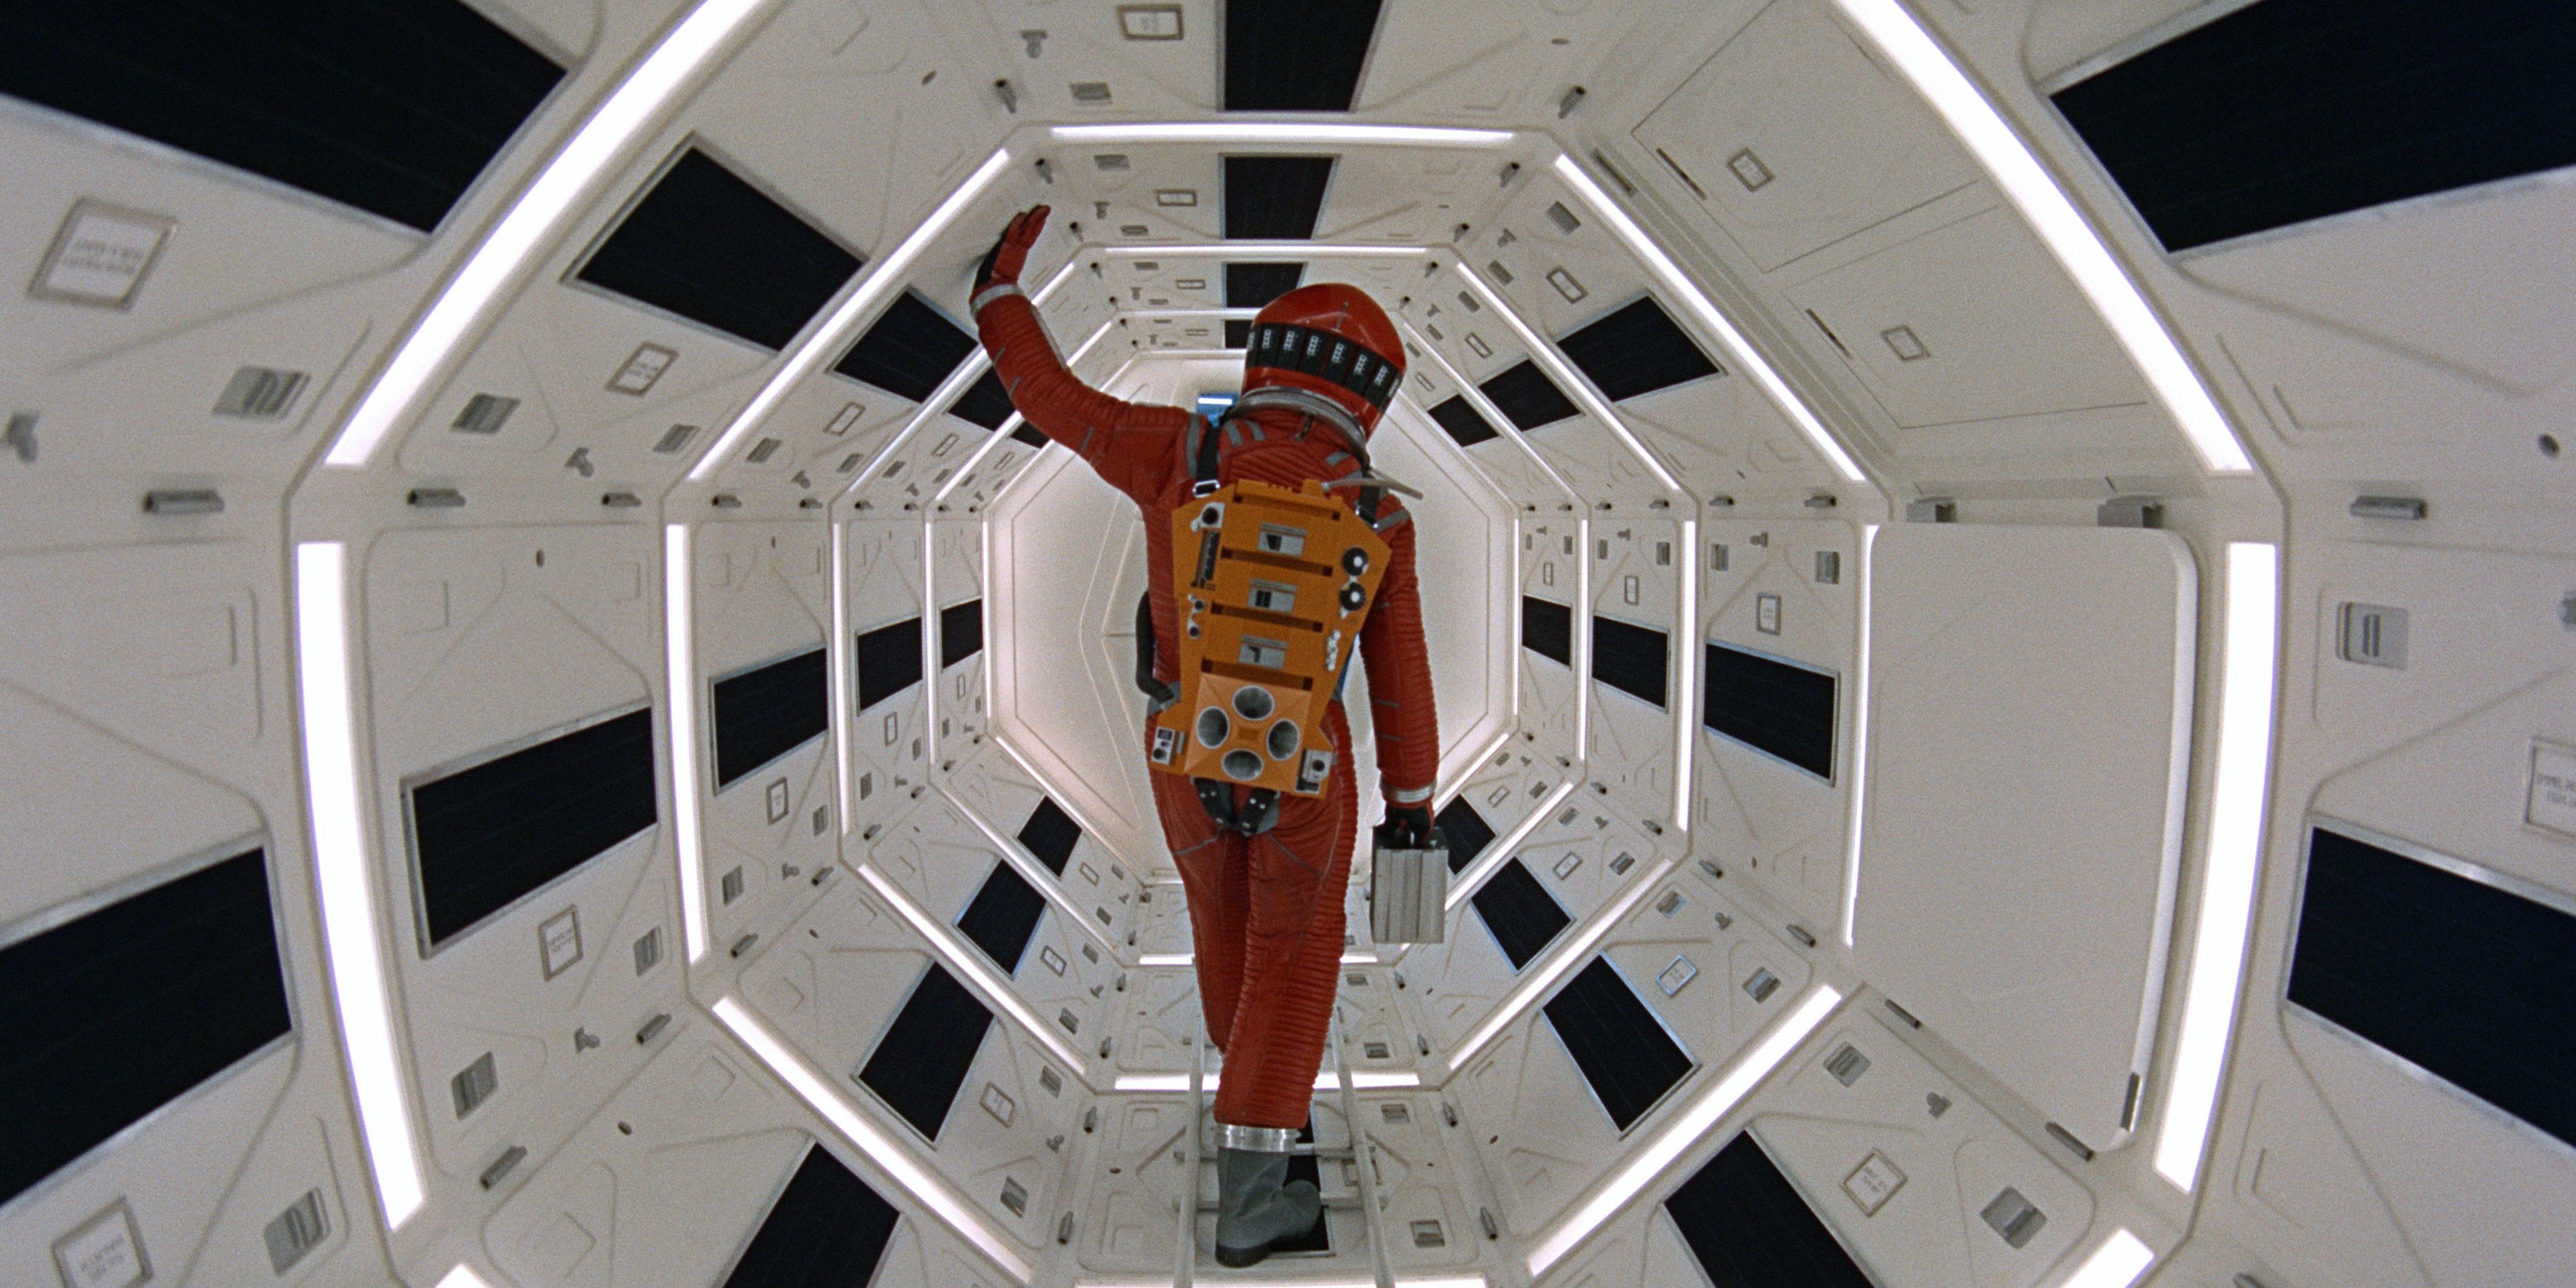 Foto icônica de 2001 A Space Odyssey mostrando Keir Dullea como um astronauta dentro de uma nave espacial iluminada